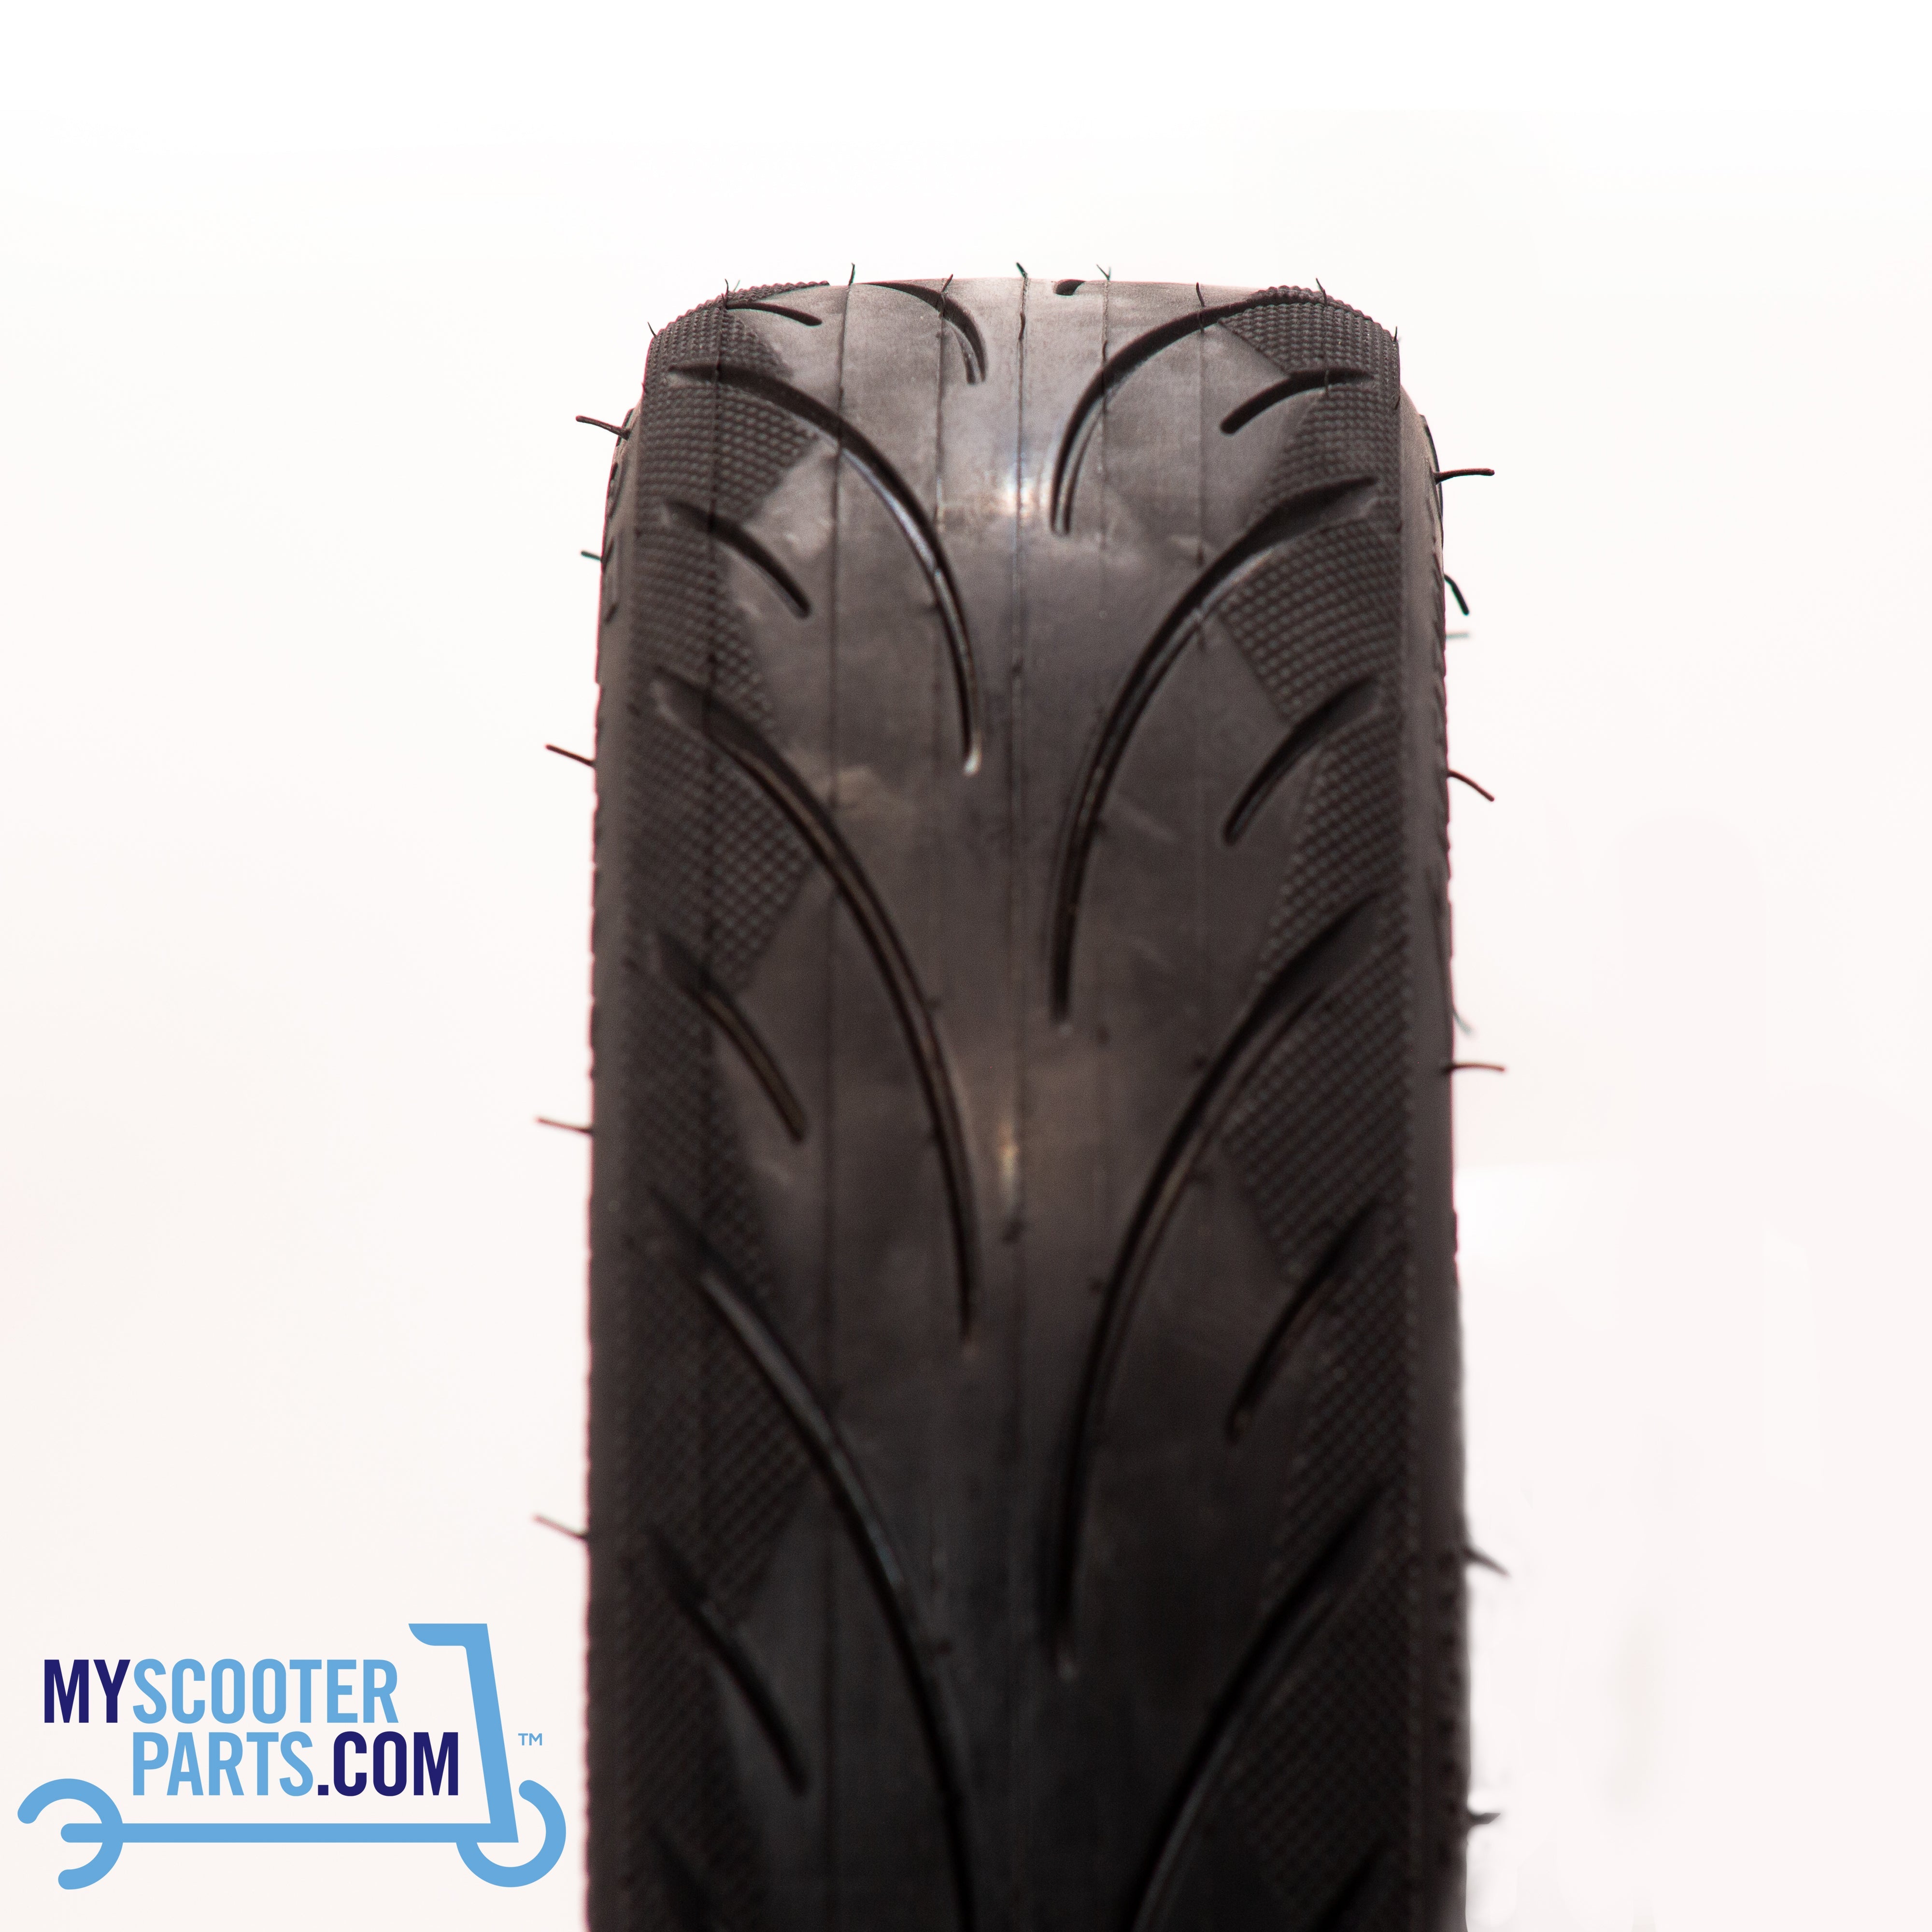 Tyre, 60/70-6.5, IA-2146-07